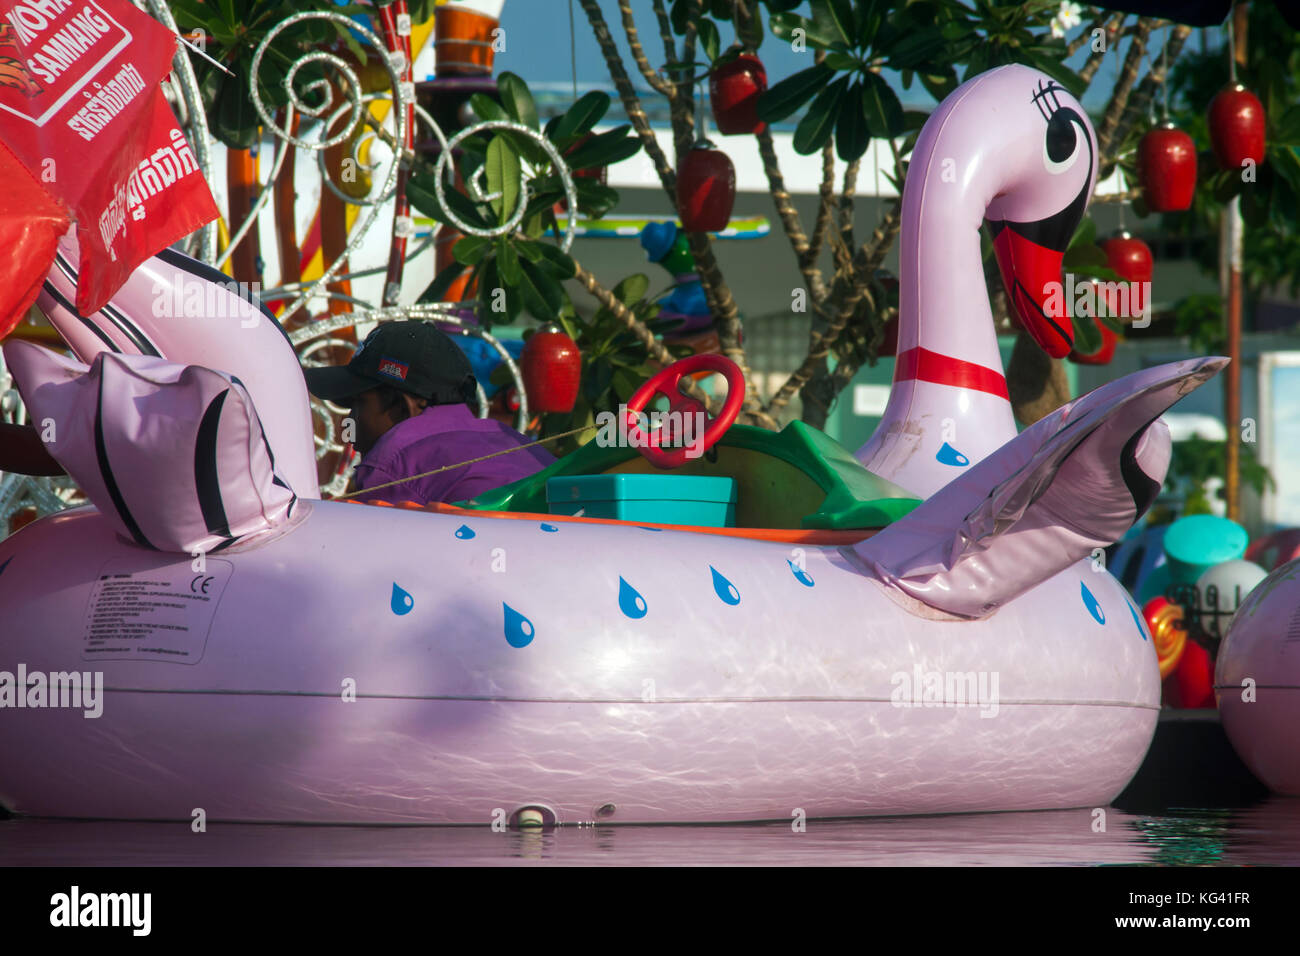 Un grand canard en plastique rose gonflable seves comme une ride pour les enfants dans un parc d'attractions sur l'île de ko pech à Phnom Penh, Cambodge. Banque D'Images